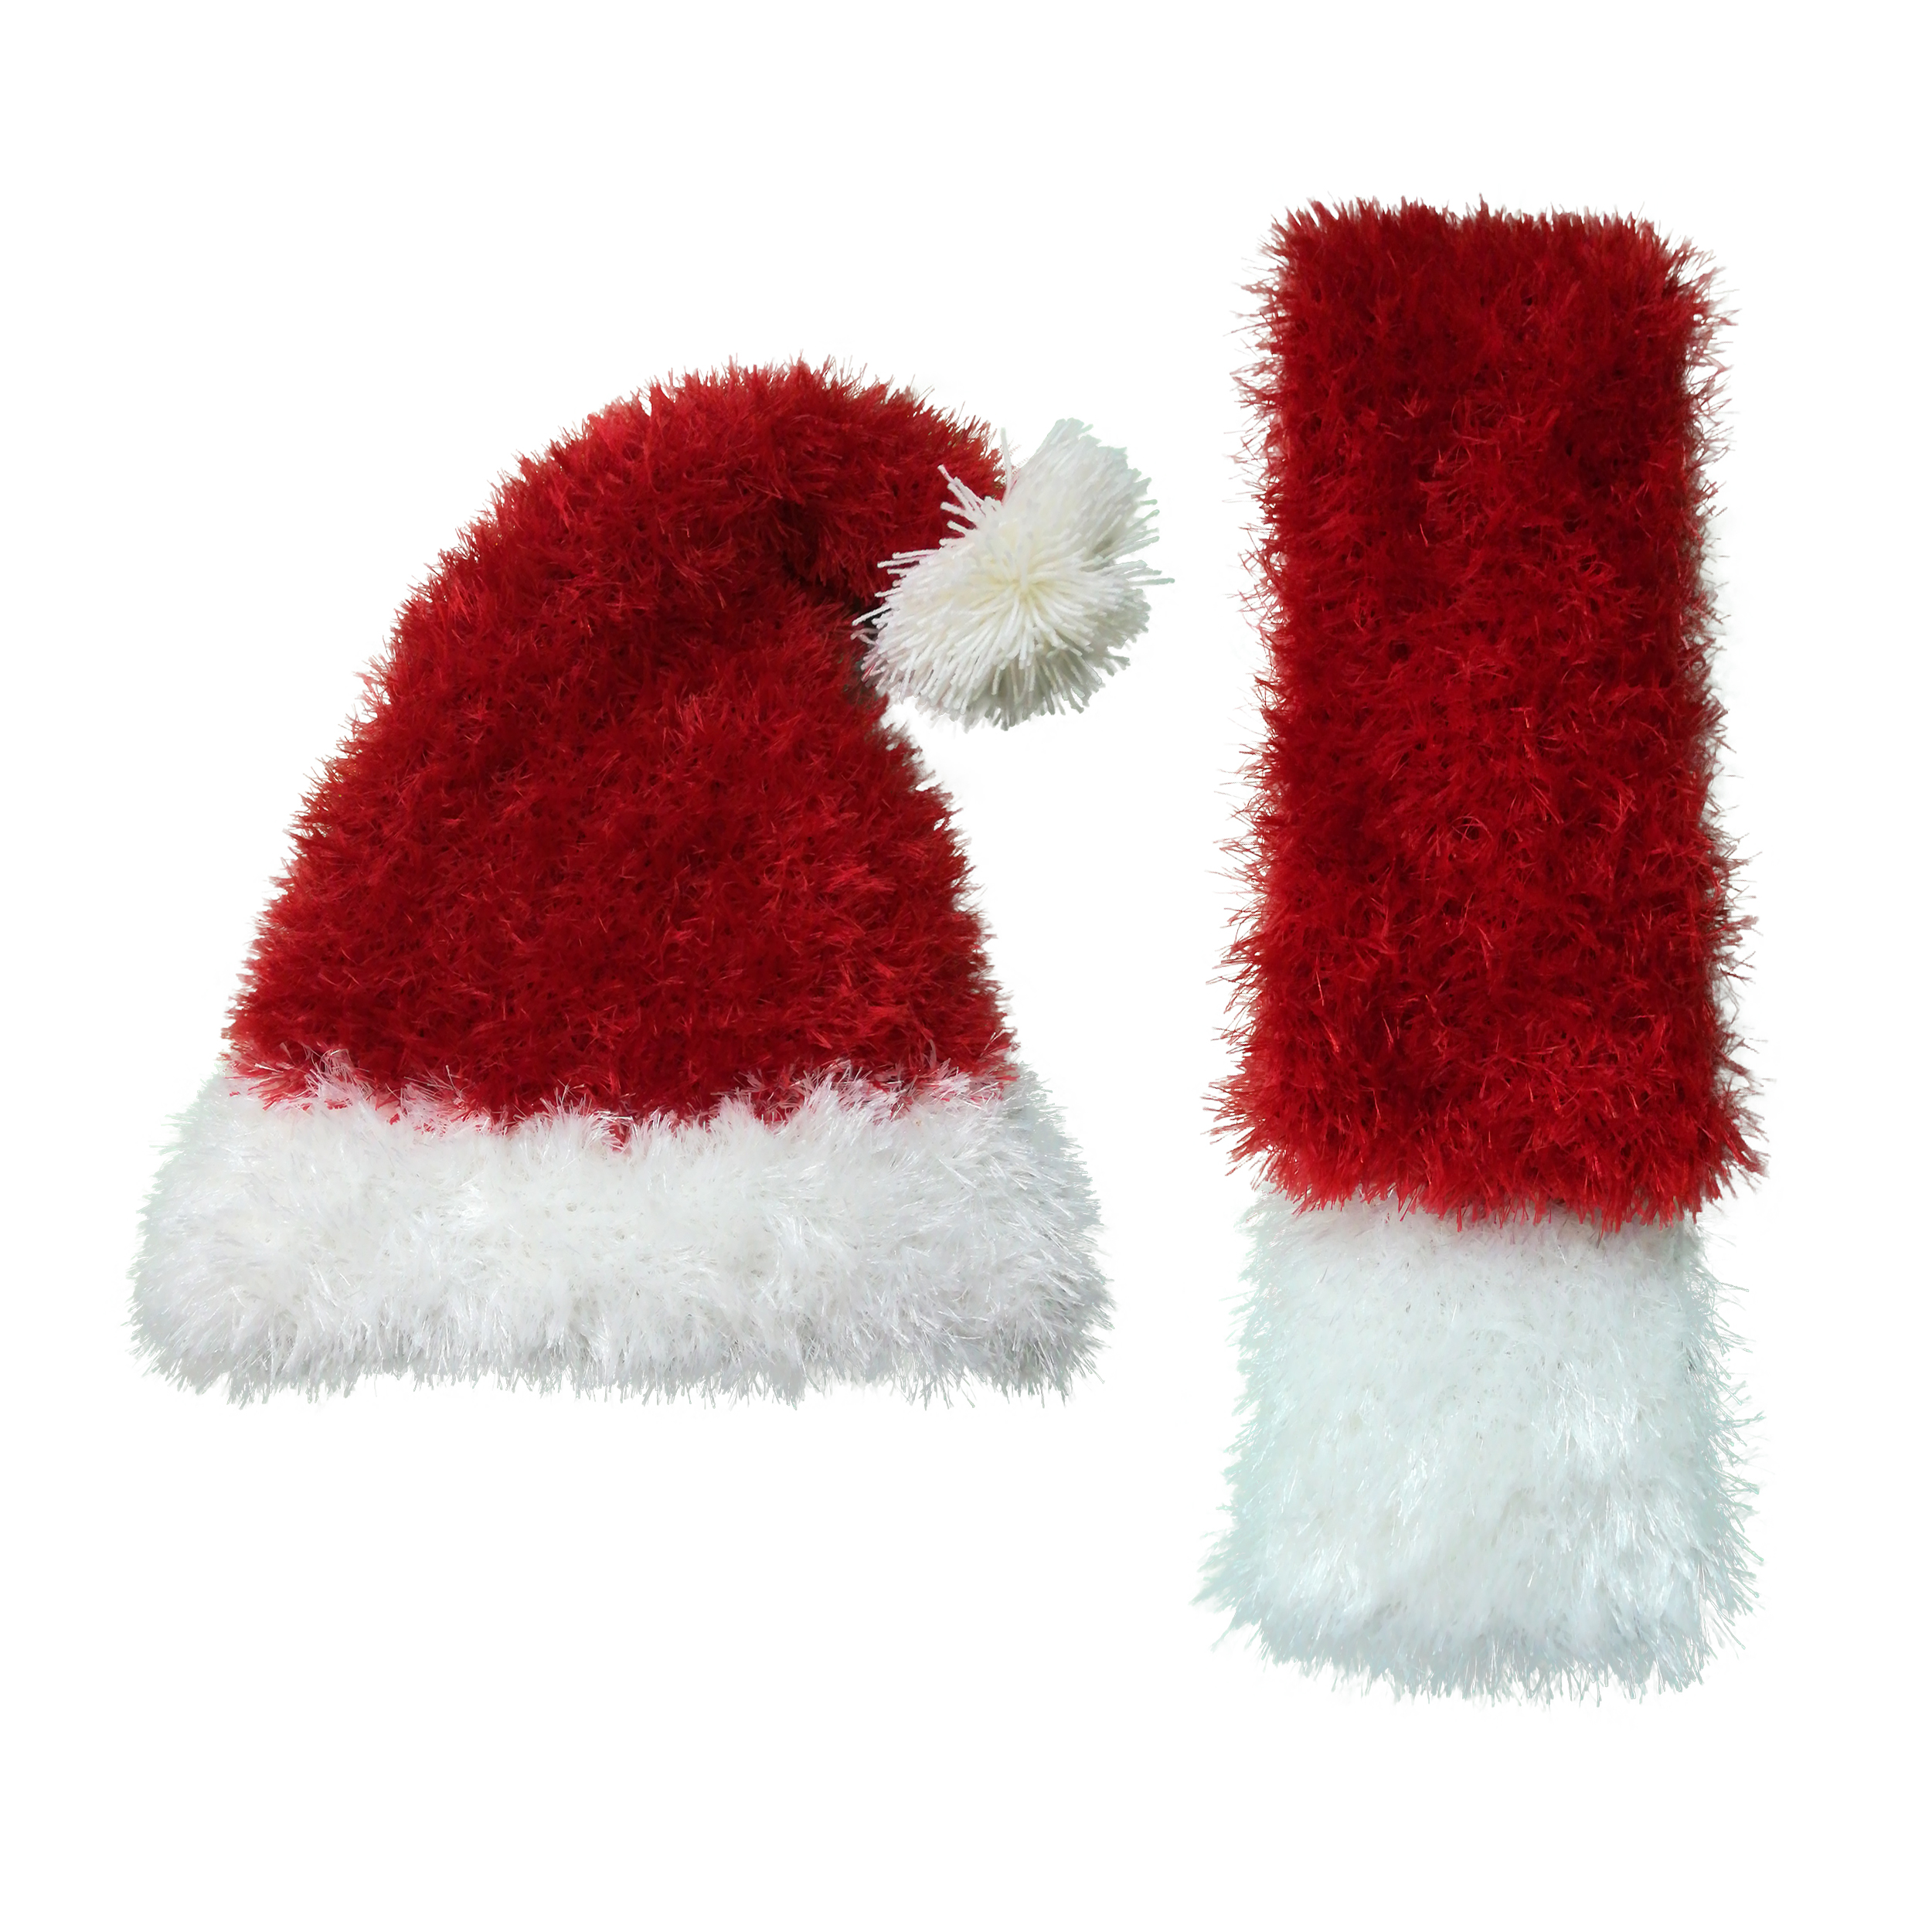 ست کلاه و شال گردن بافتنی مدل Santa Claus